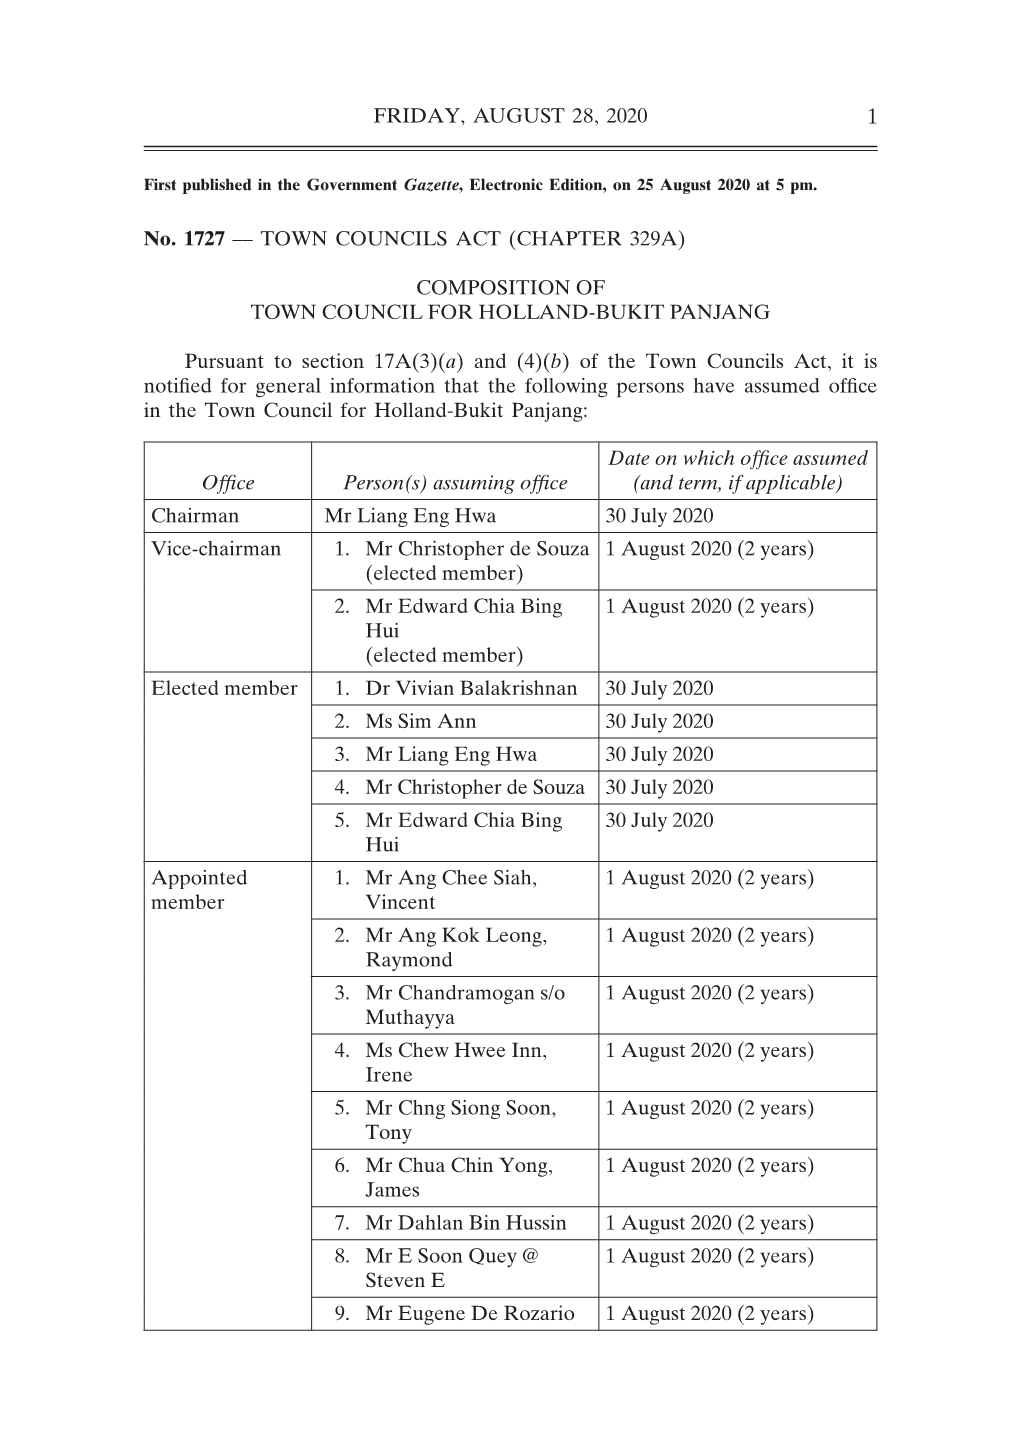 Composition of Town Council for Holland-Bukit Panjang